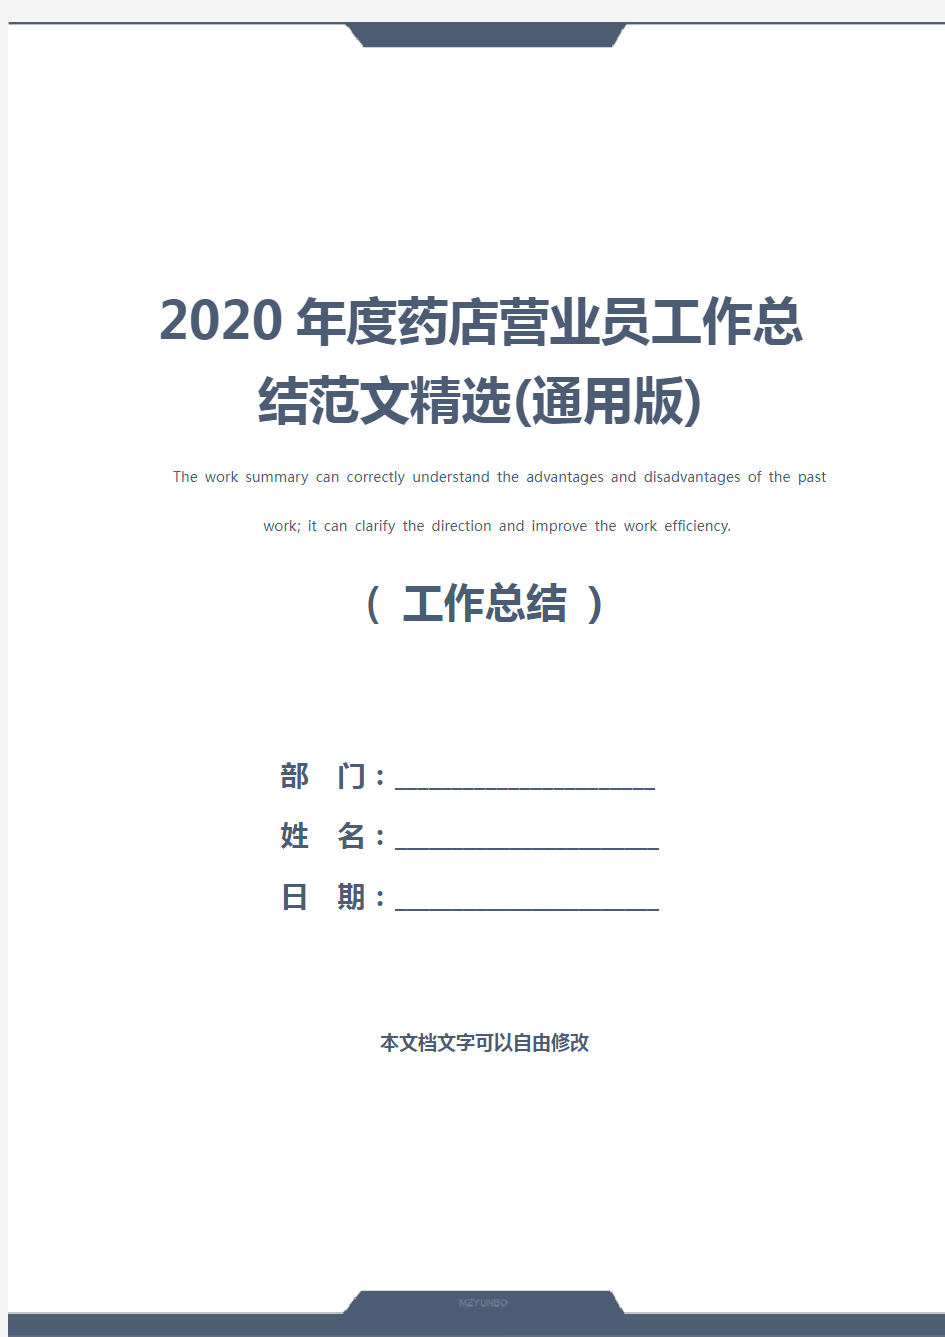 2020年度药店营业员工作总结范文精选(通用版)